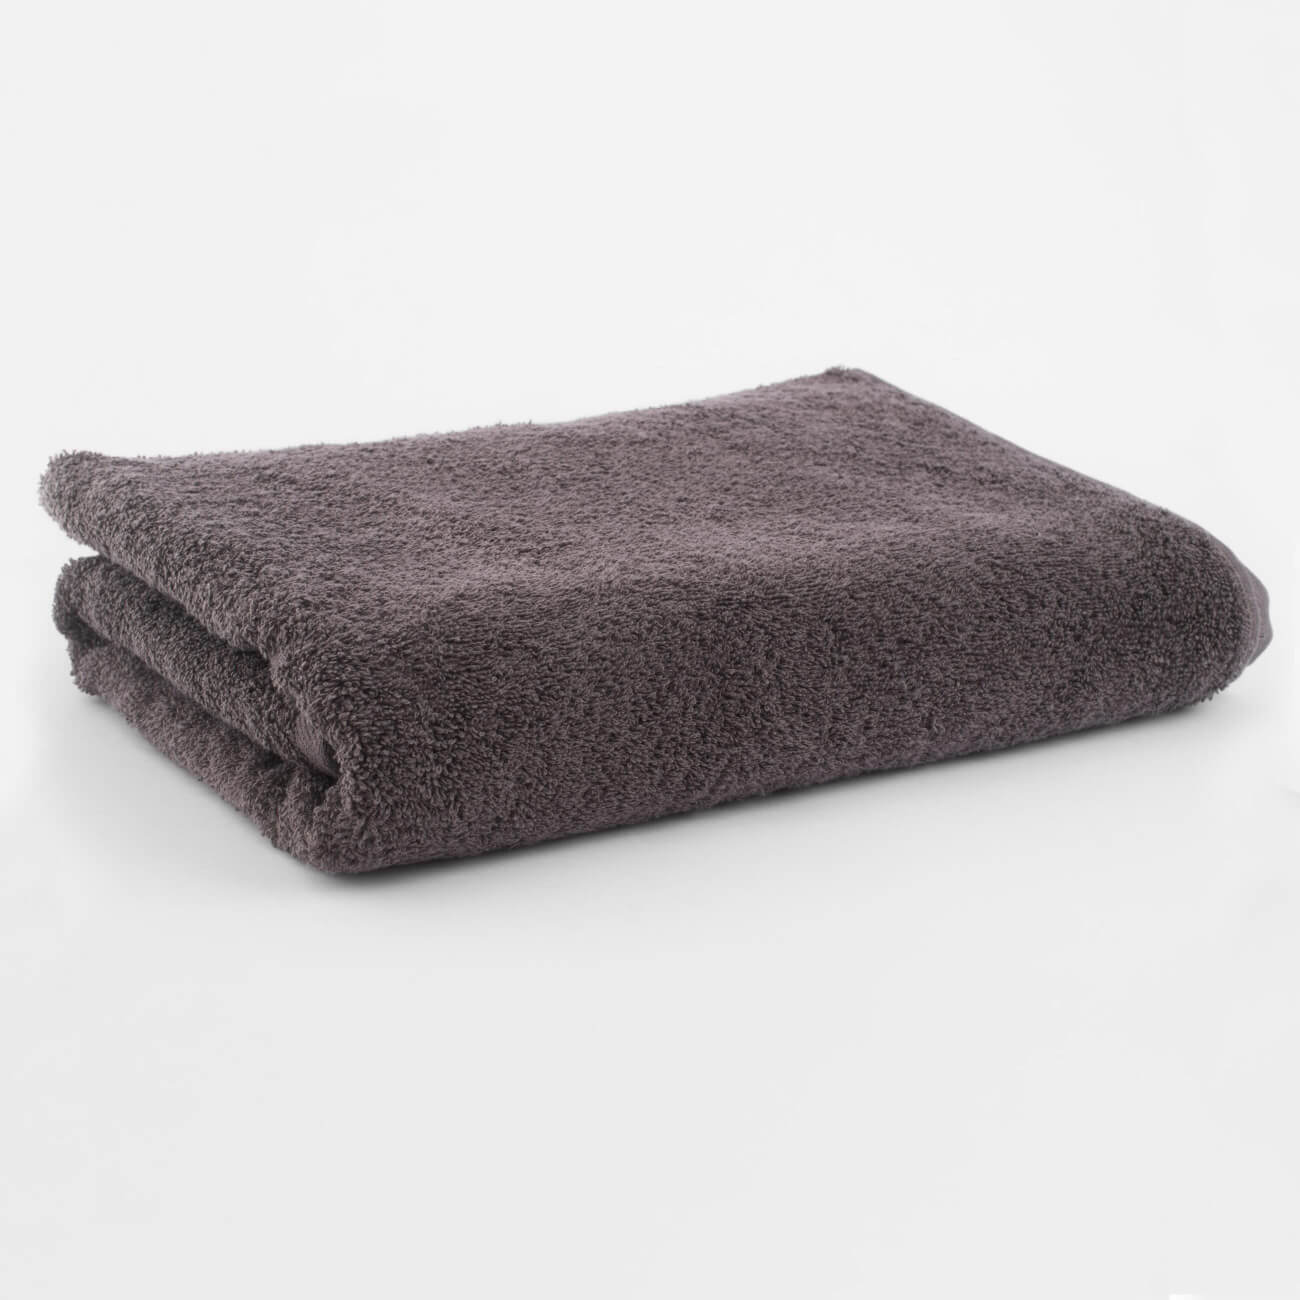 Полотенце, 70х140 см, хлопок, коричневое, Wellness ayrton 160 пляжное полотенце